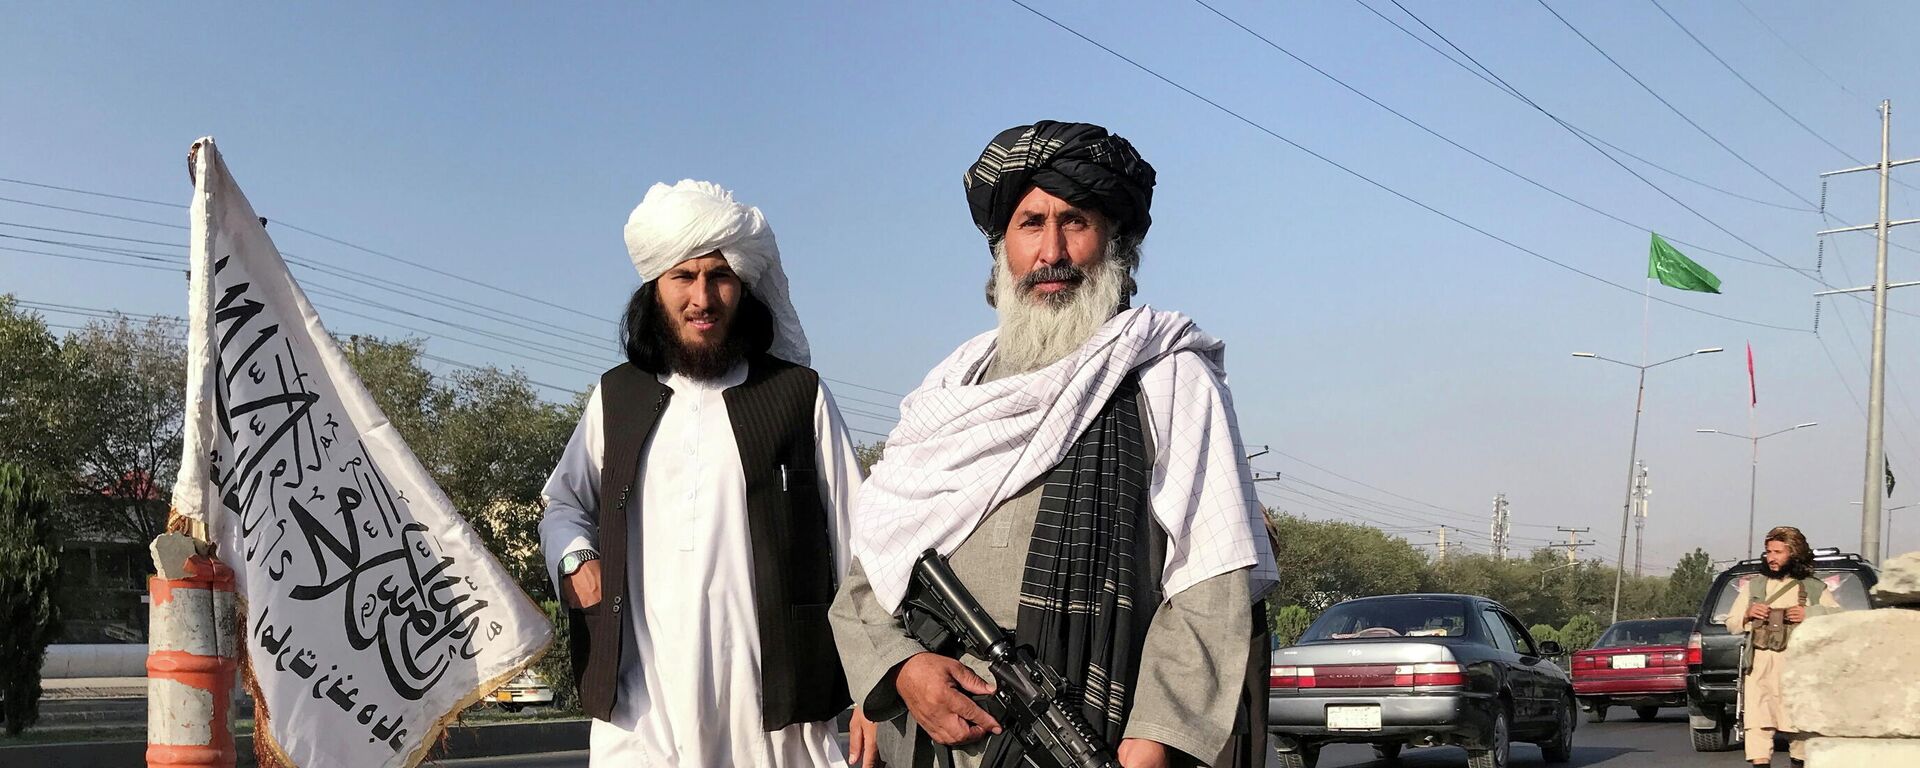 Pripadnici talibanskog pokreta naoružani puškama u Kabulu - Sputnik Srbija, 1920, 03.09.2021